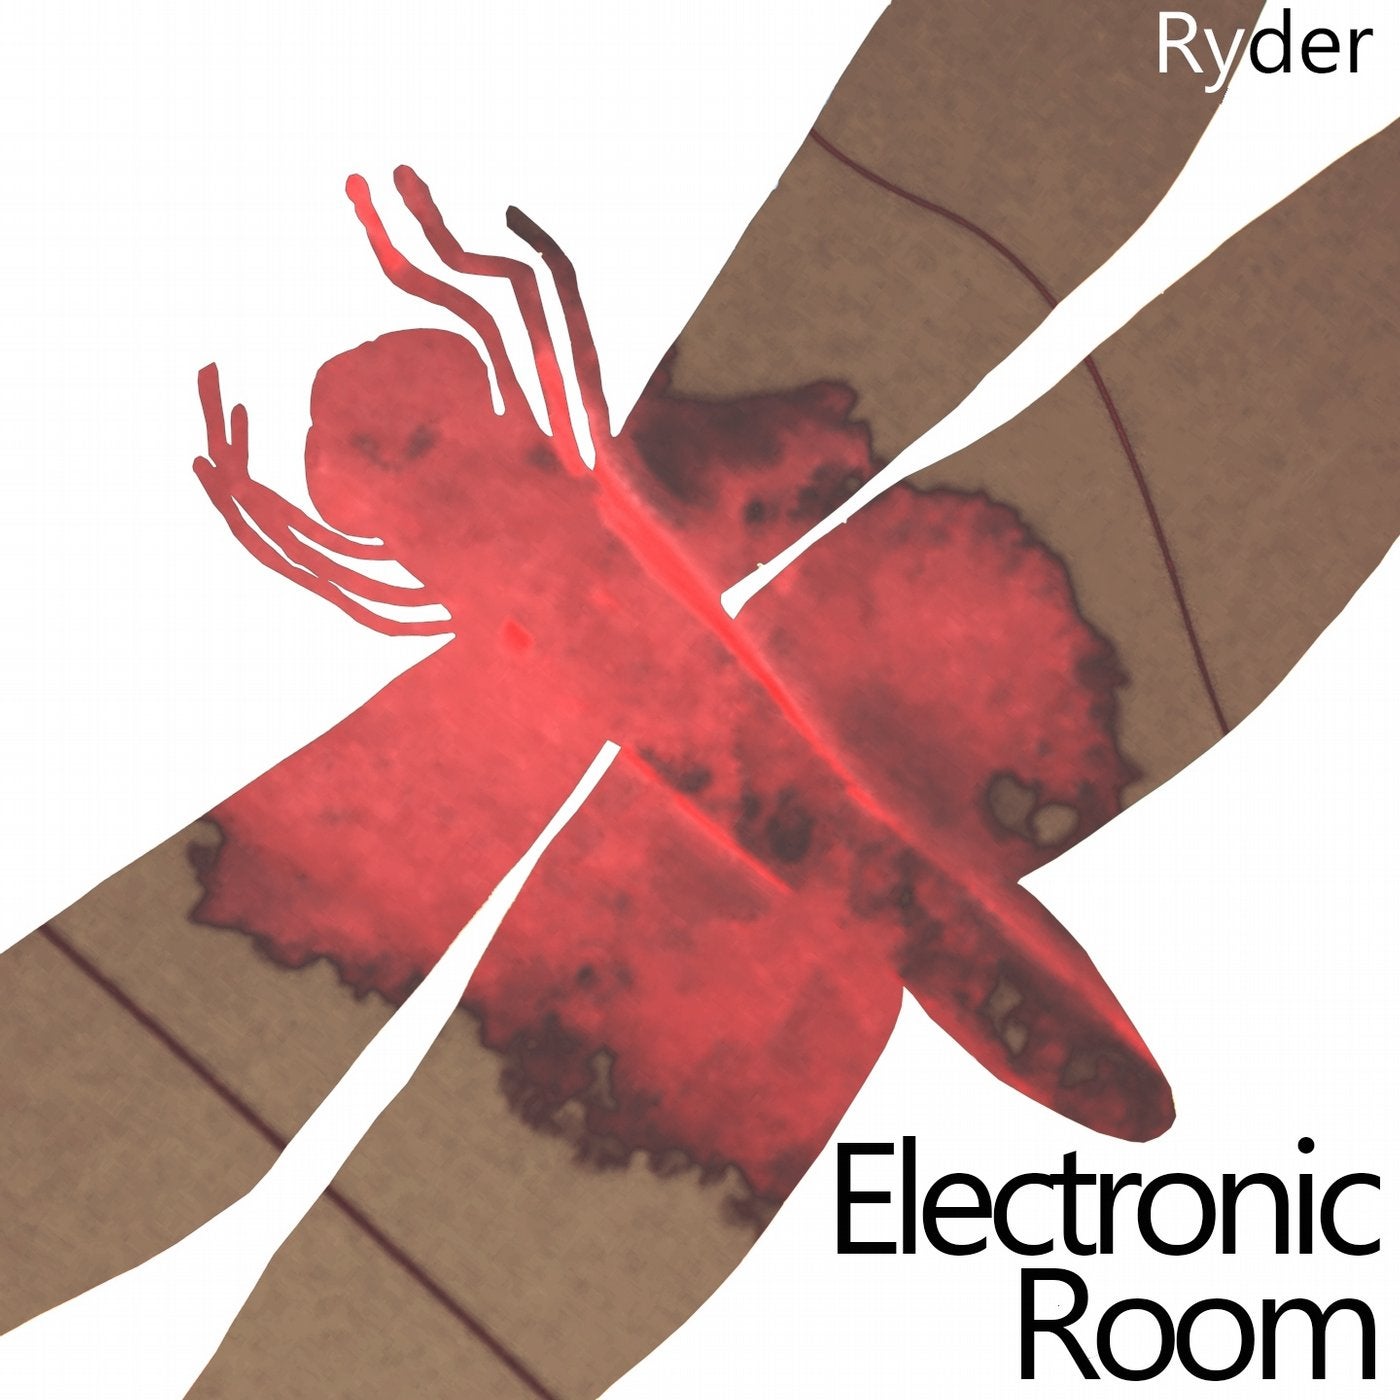 Electronic Room